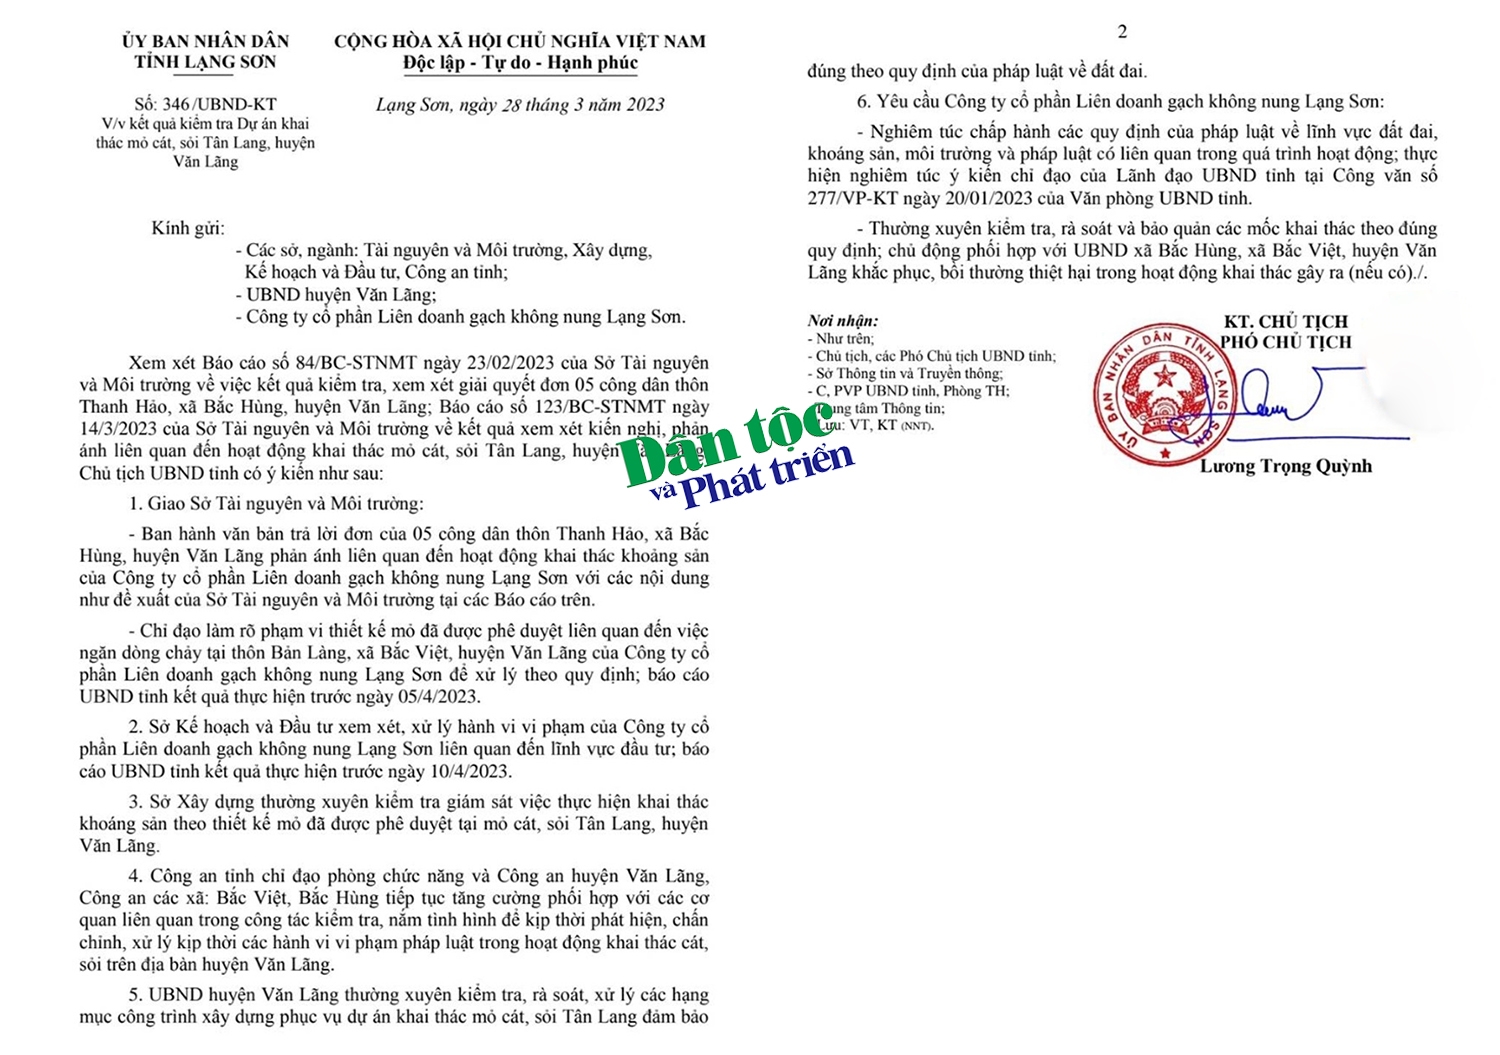 Công văn số 346/UBND-KT của UBND tỉnh Lạng Sơn về Kết quả kiểm tra Dự án khai thác mỏ cát, sỏi Tân Lạng, huyện Văn Lãng